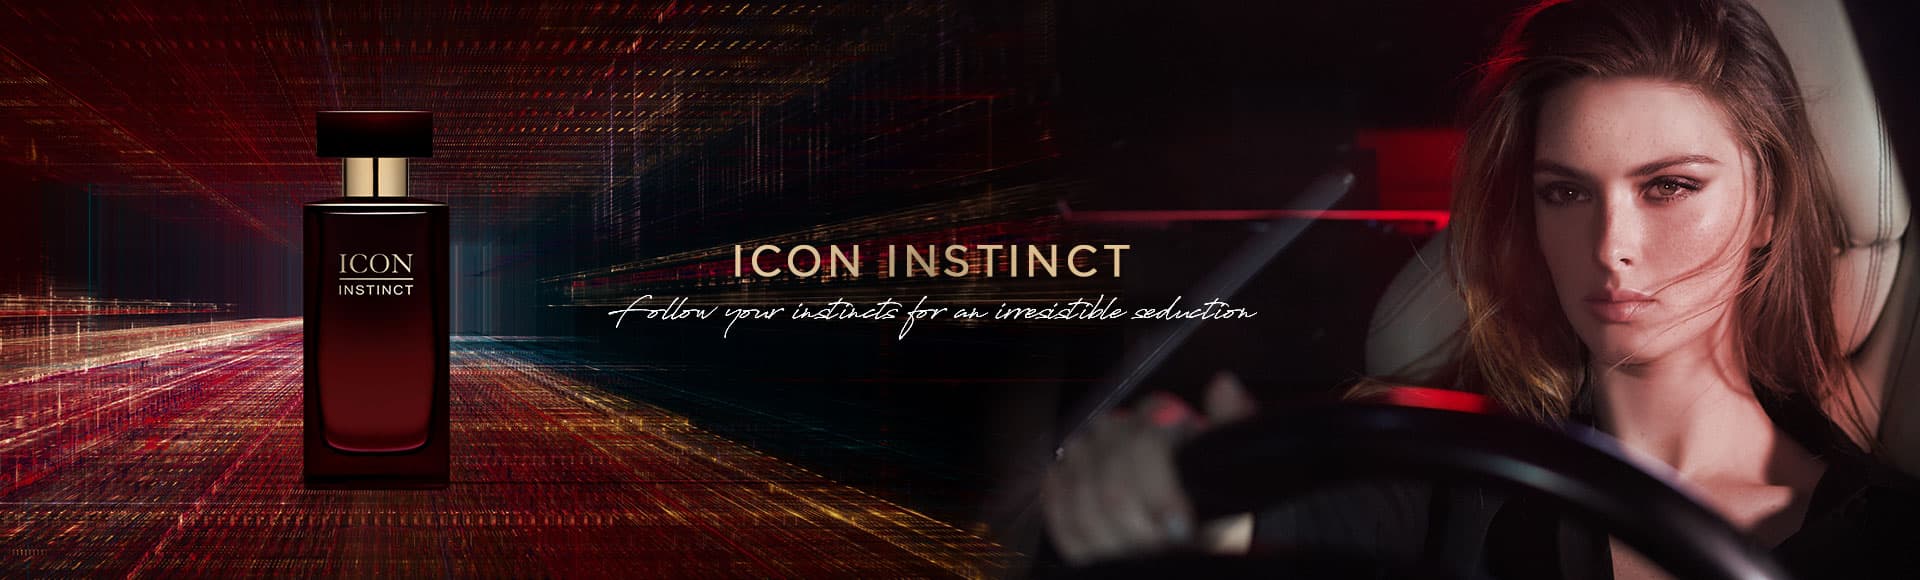 icon instinct banner